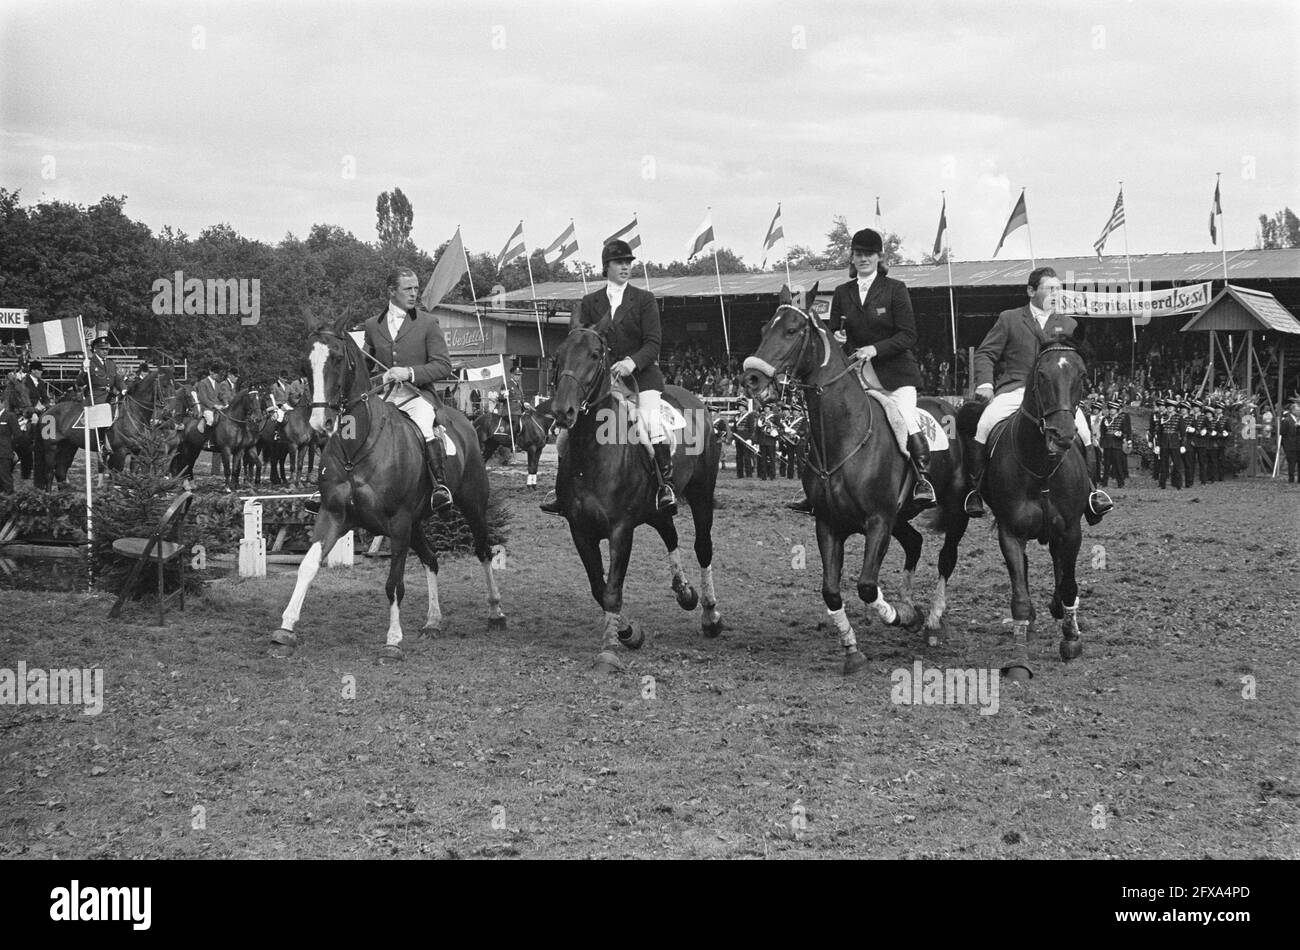 CHIO en Rotterdam. El equipo inglés durante el regazo de honor C. D.  Barker, Miss E. Broome, A. Towsend y M. Cresswell, 1 de septiembre de 1963,  Vueltas de honor, Equipos, Países